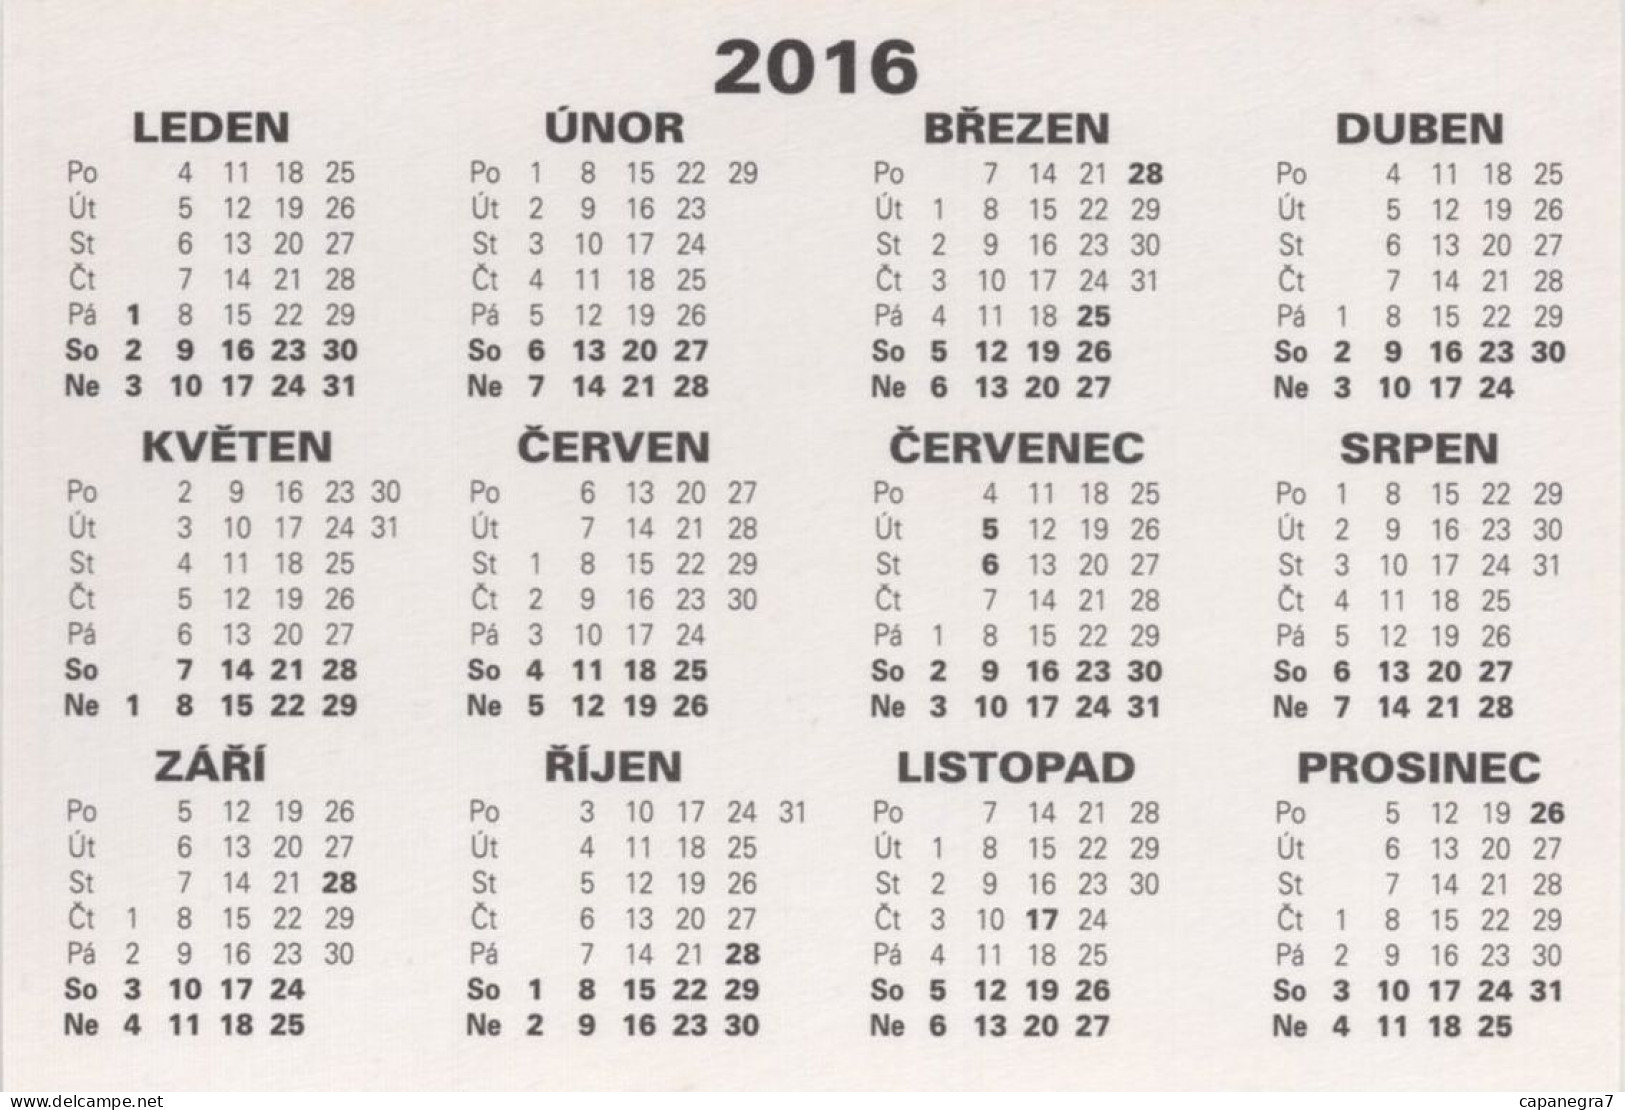 3 Calendars Models Of Steam Locomotives, Czech Rep, 2016 - Tamaño Pequeño : 2001-...